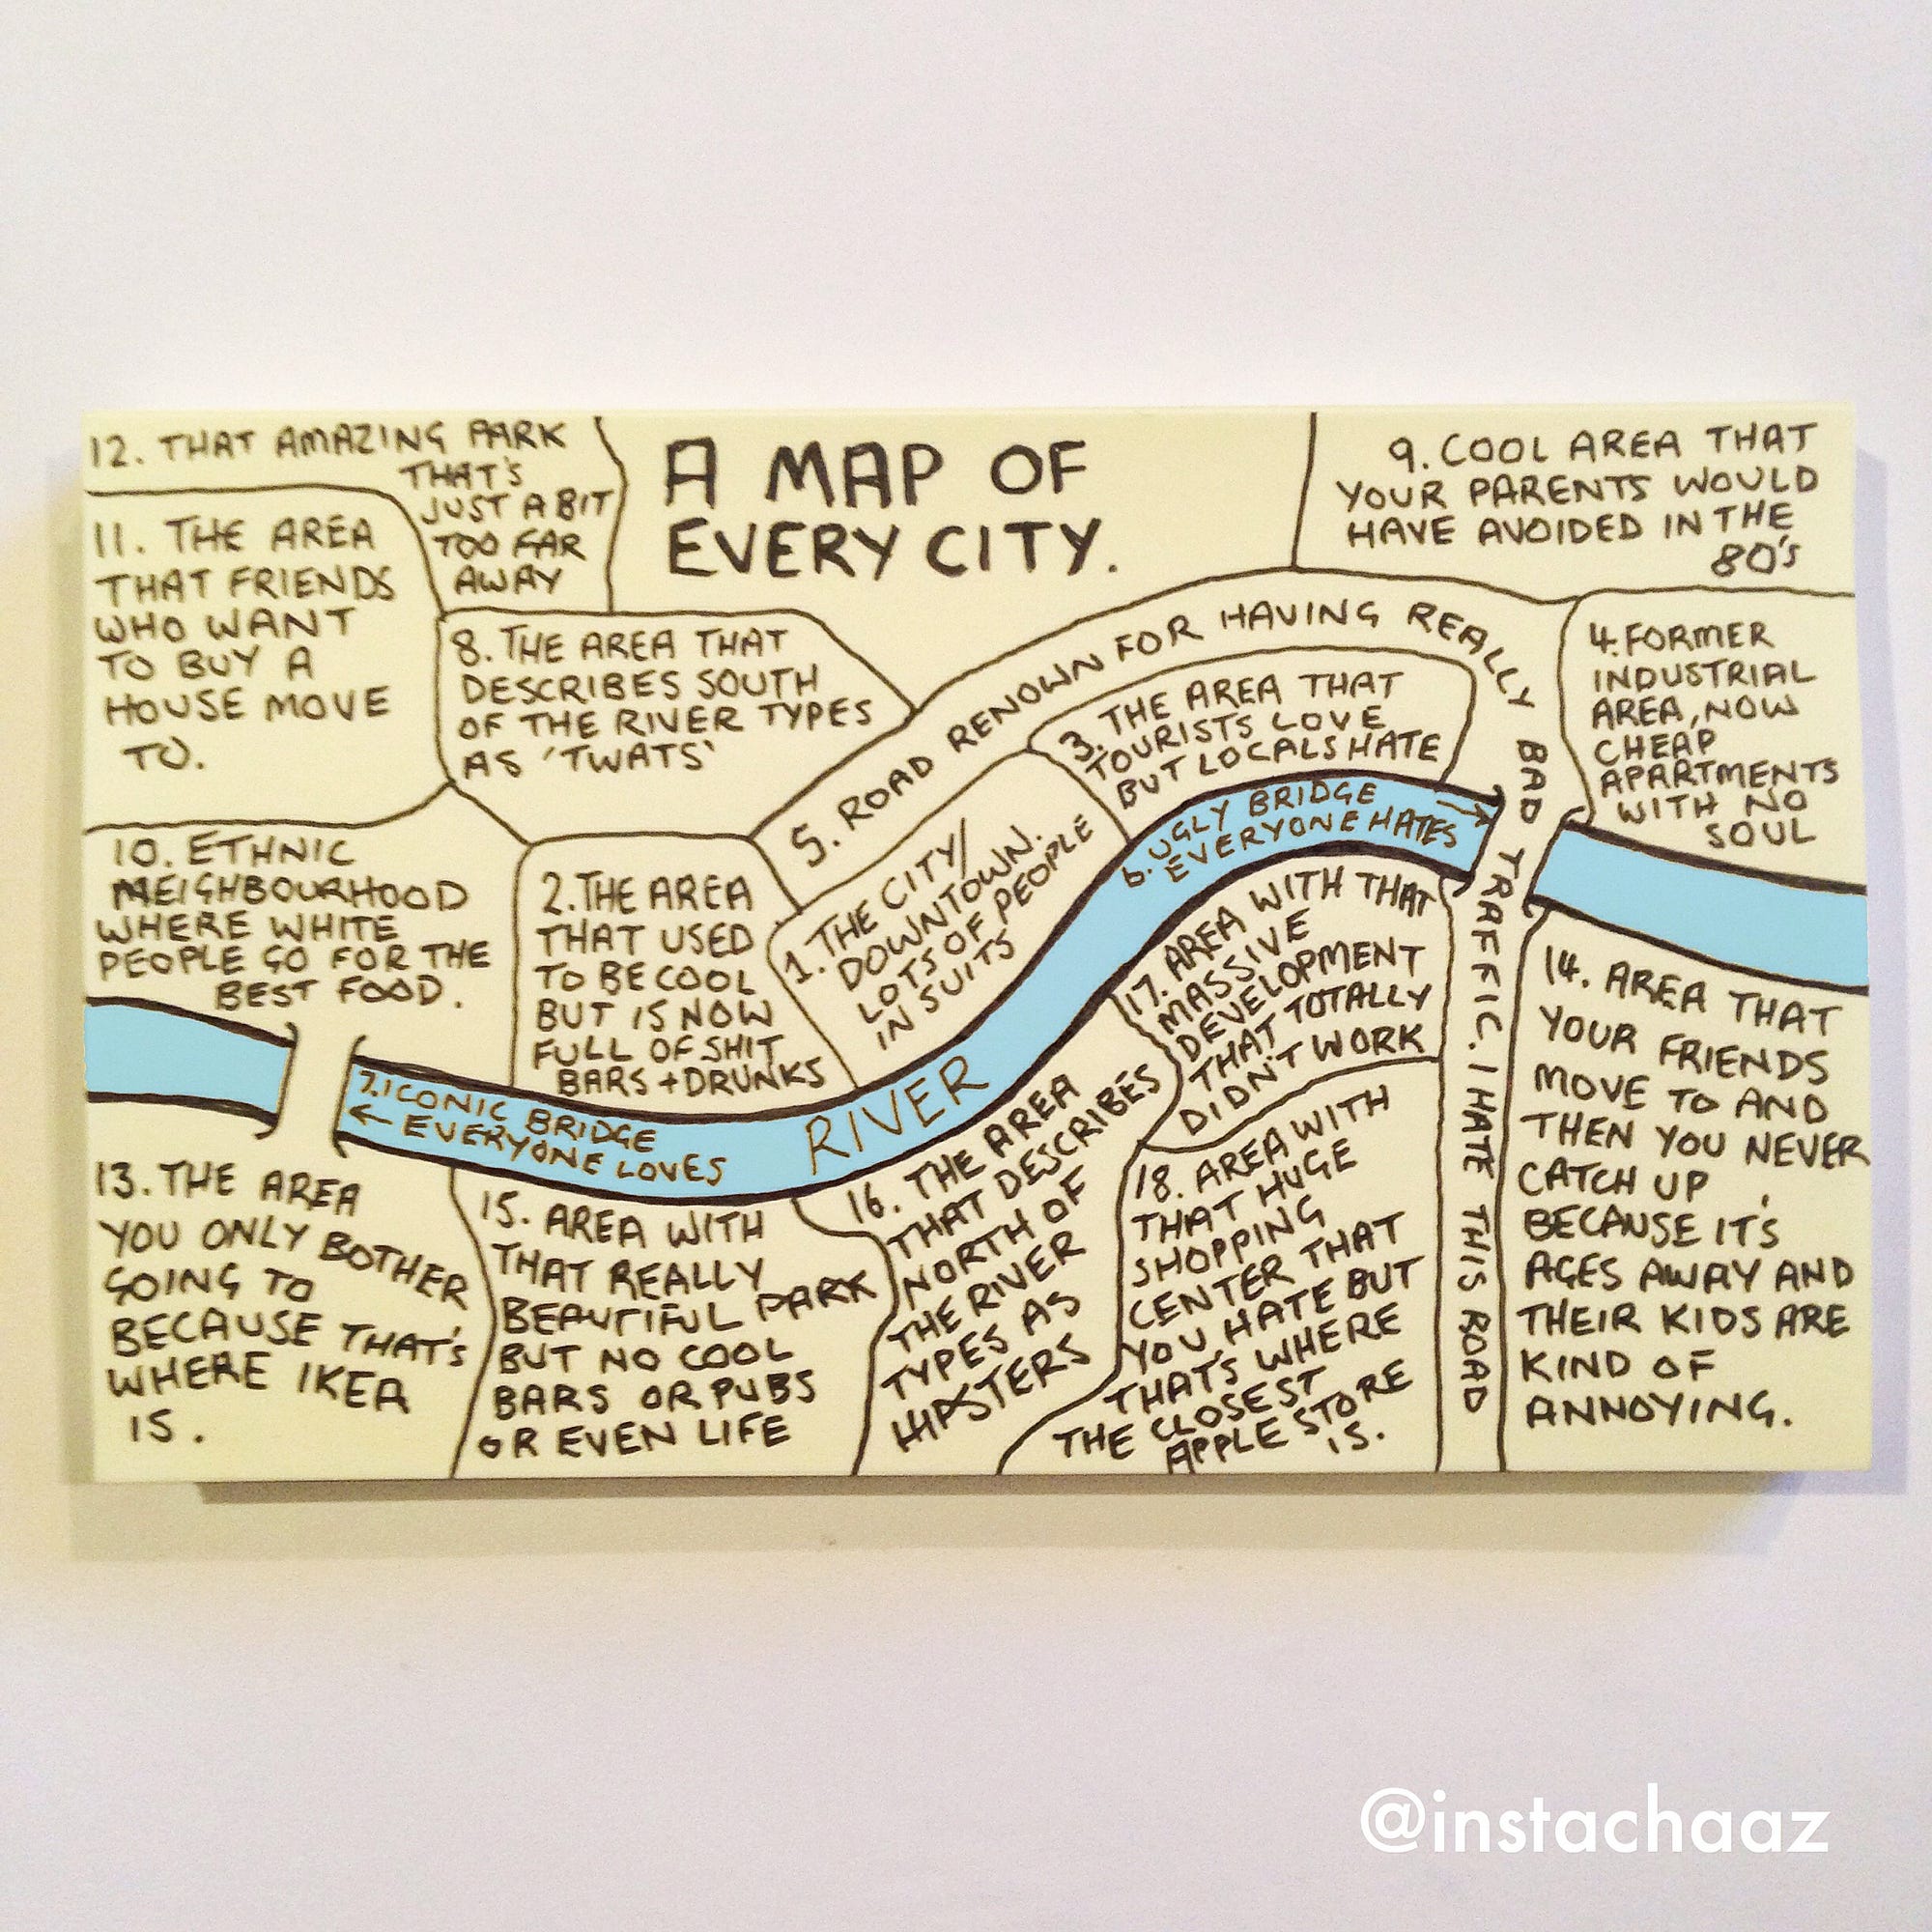 КАРТА МЕСТ, КОТОРЫЕ ЕСТЬ В КАЖДОМ ГОРОДЕ Иллюстратор из Лондона, Чез Хаттон создал “Карту каждого города” 1*o1vBcukXlyzZZEn8sNqhGw